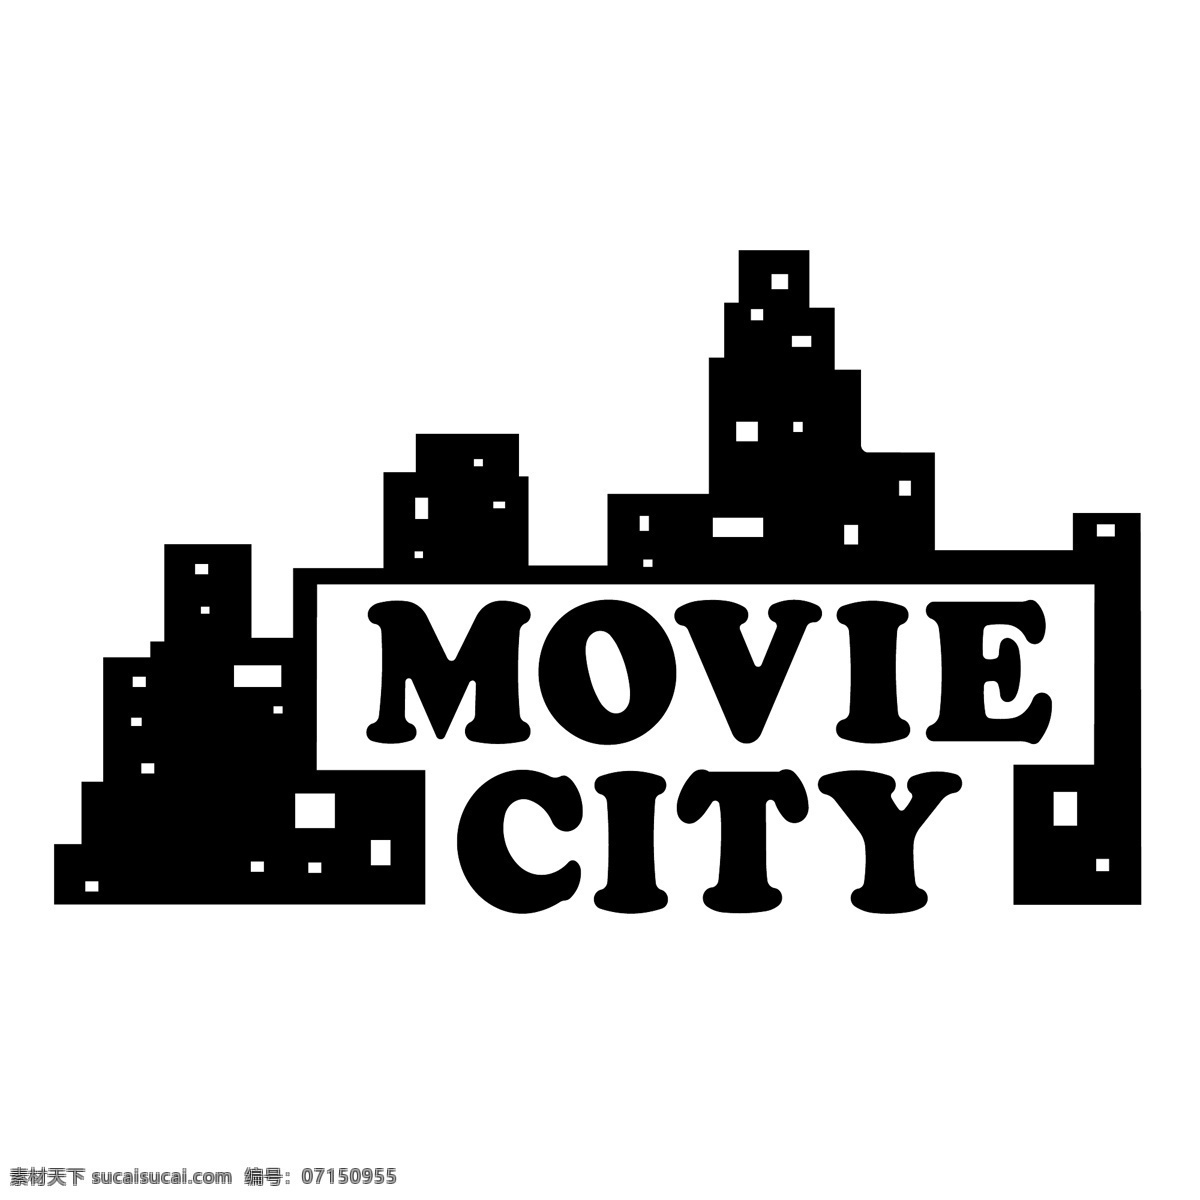 电影城 免费电影 城市标志 标识 psd源文件 logo设计